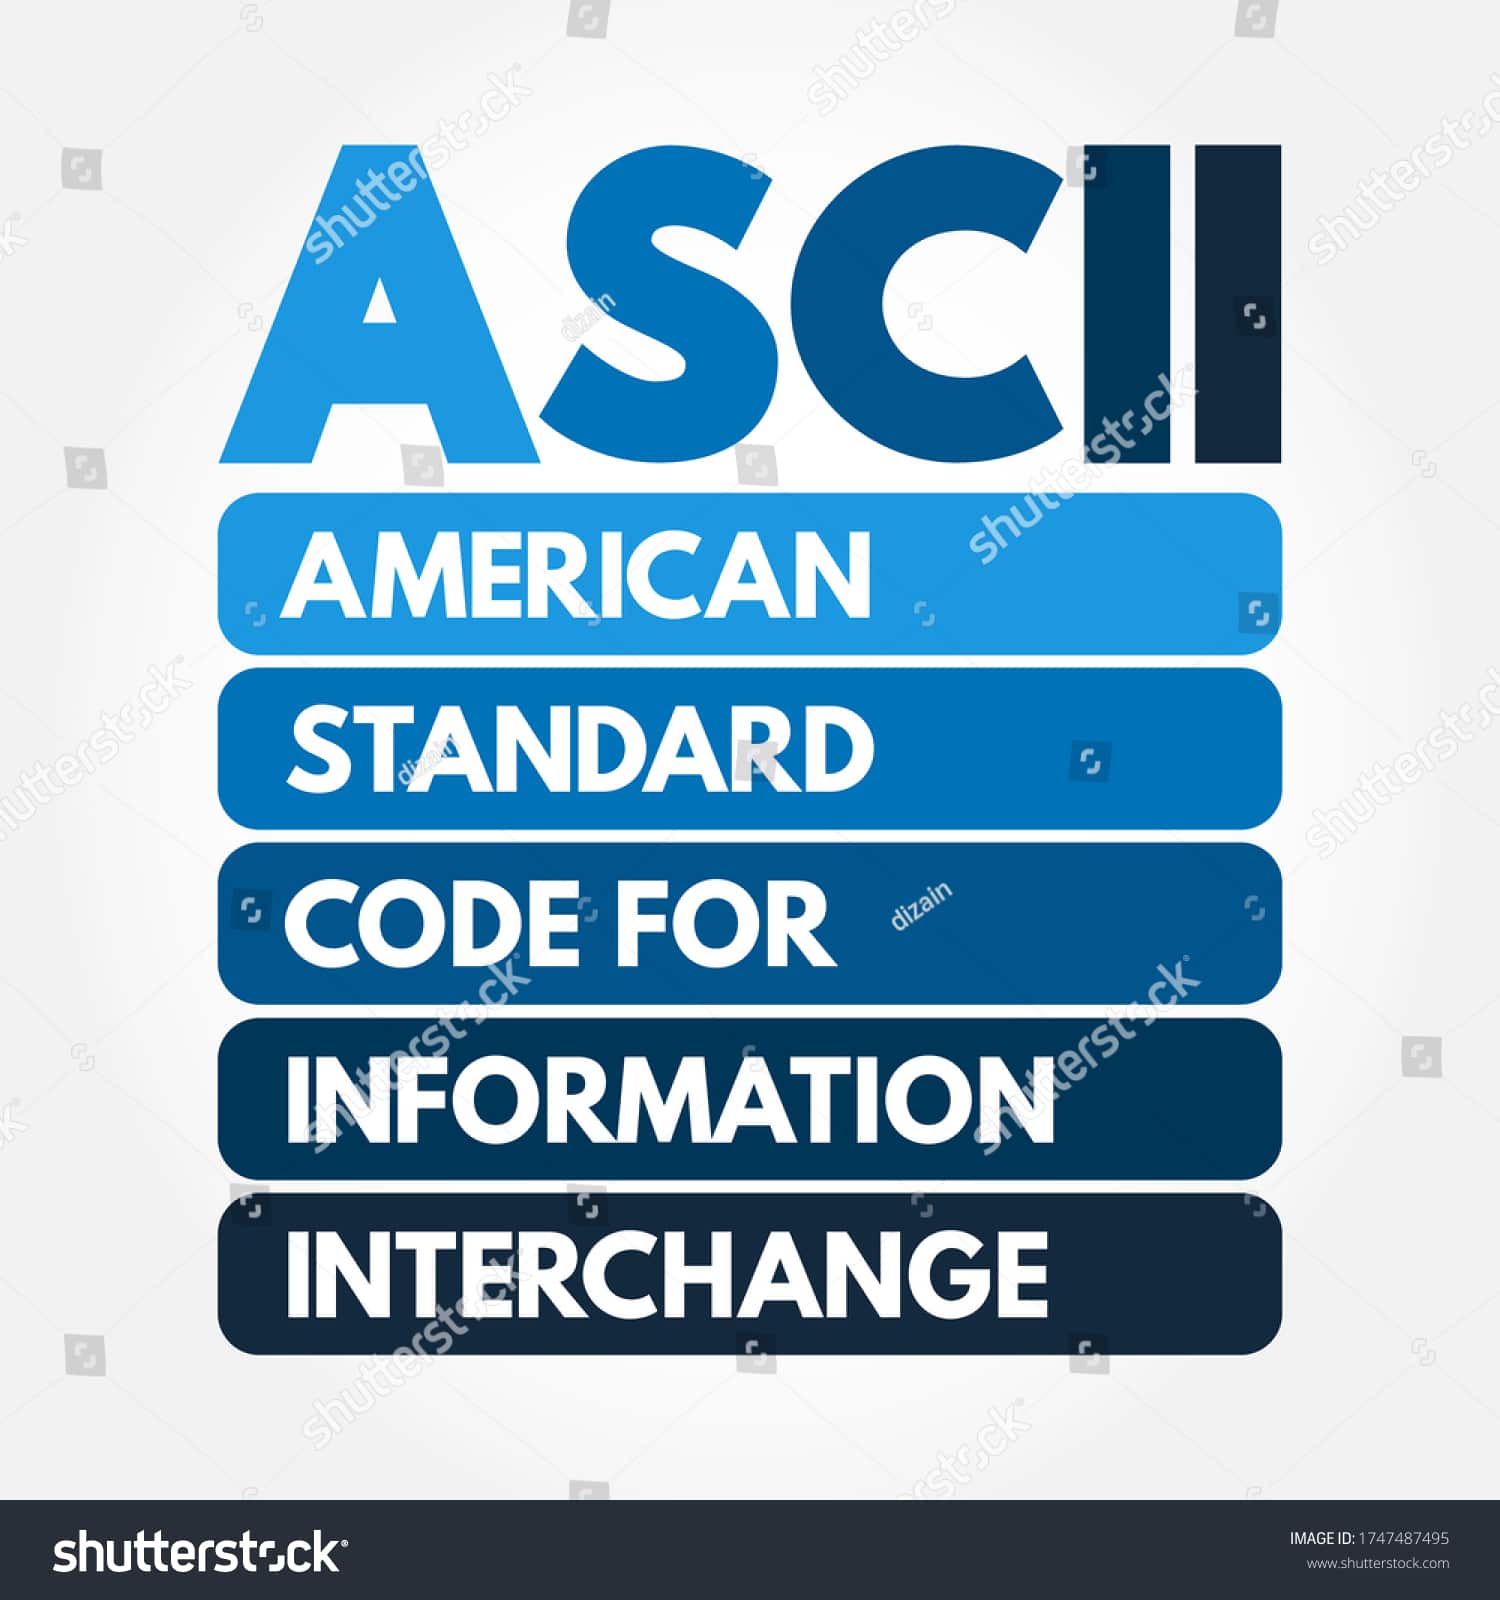 Código Padrão Americano para Intercâmbio de Informações (ASCII)